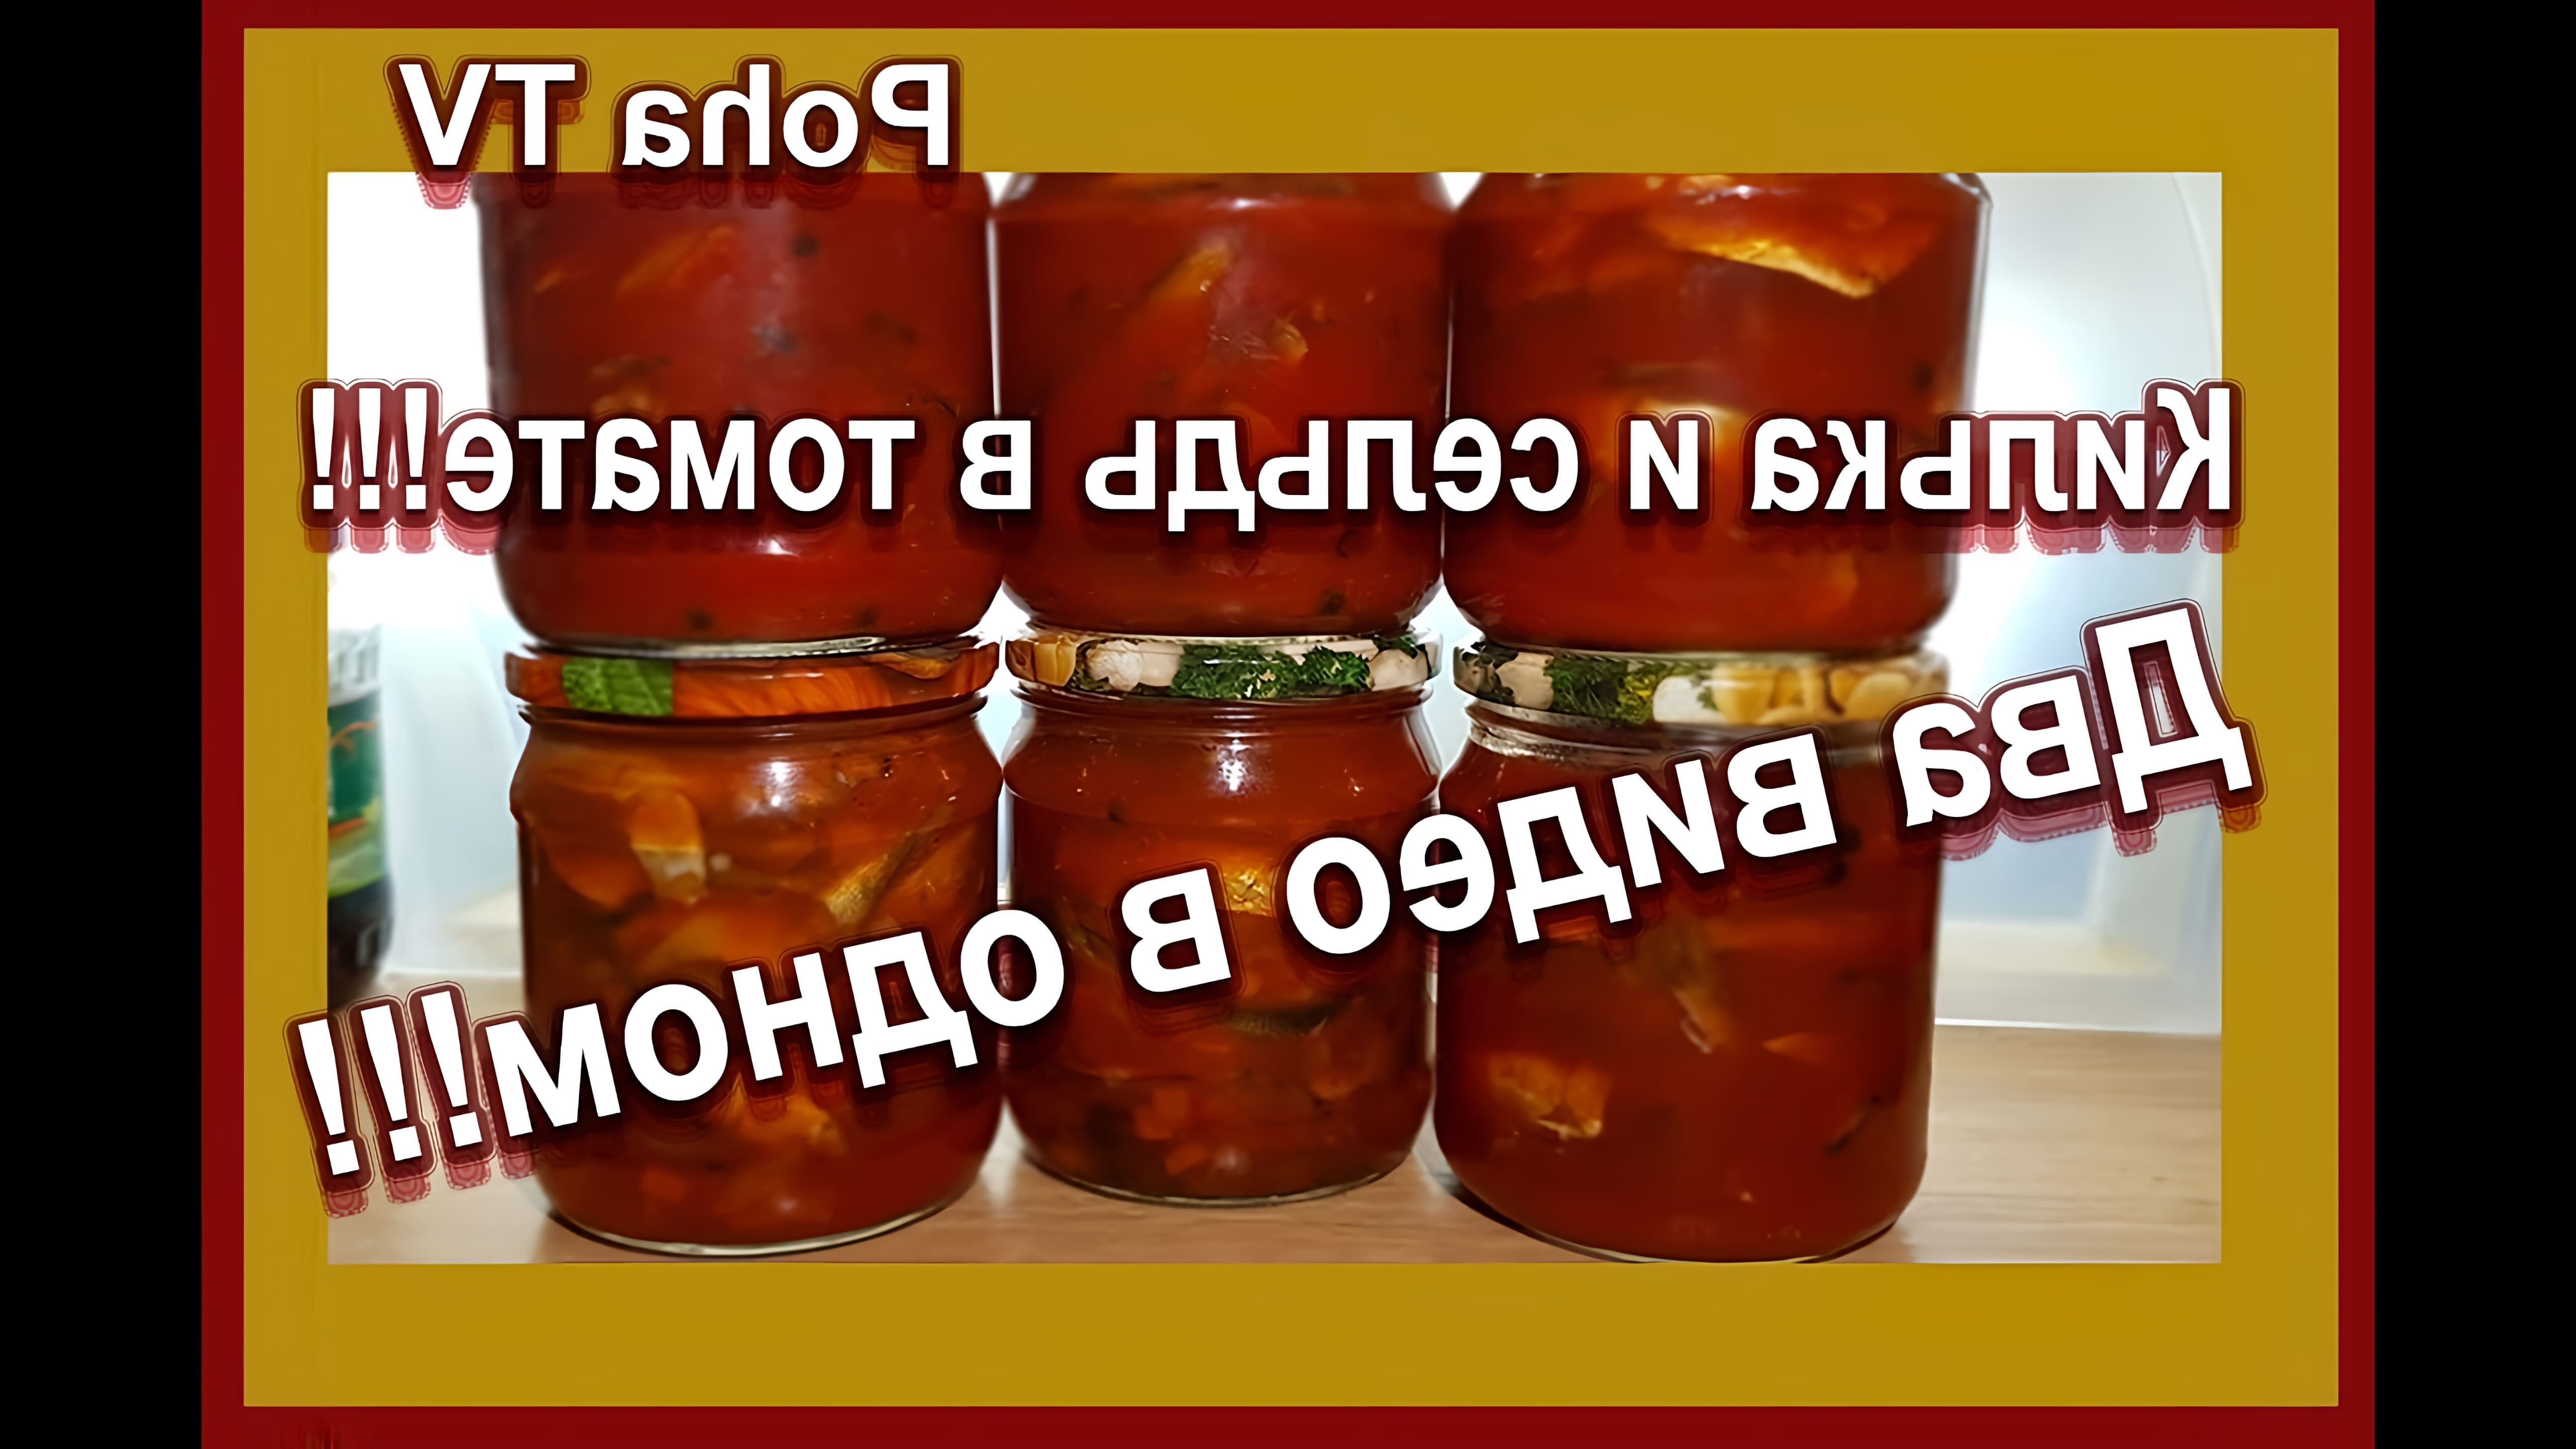 В данном видео демонстрируется процесс приготовления консервов из кильки и сельди в томатной подливке